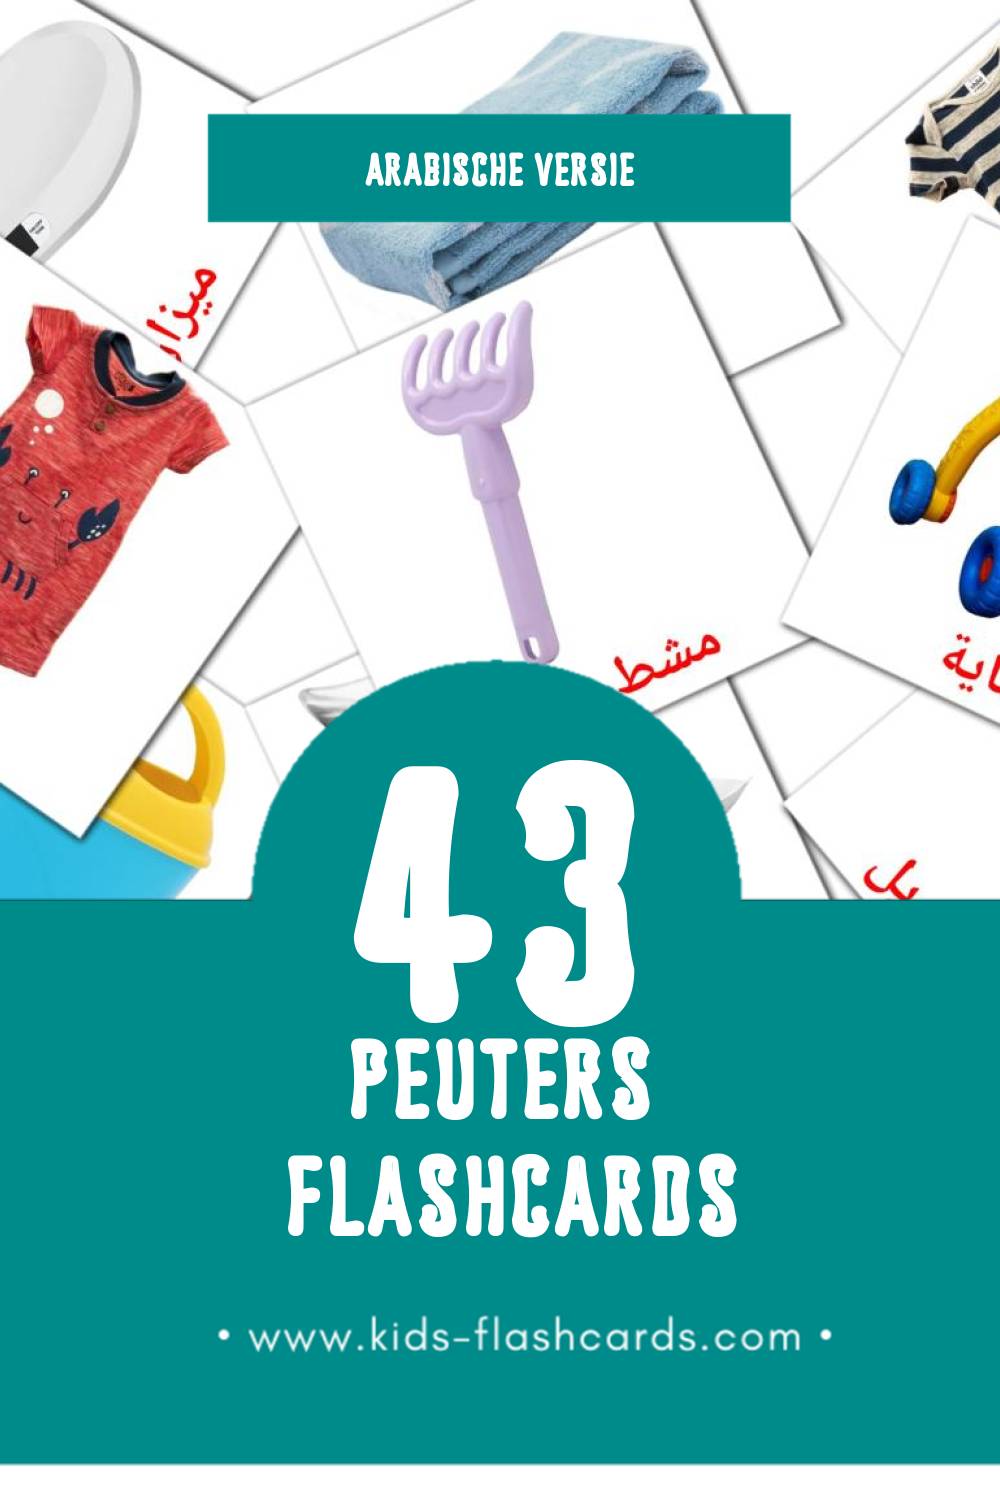 Visuele مولود Flashcards voor Kleuters (43 kaarten in het Arabisch)